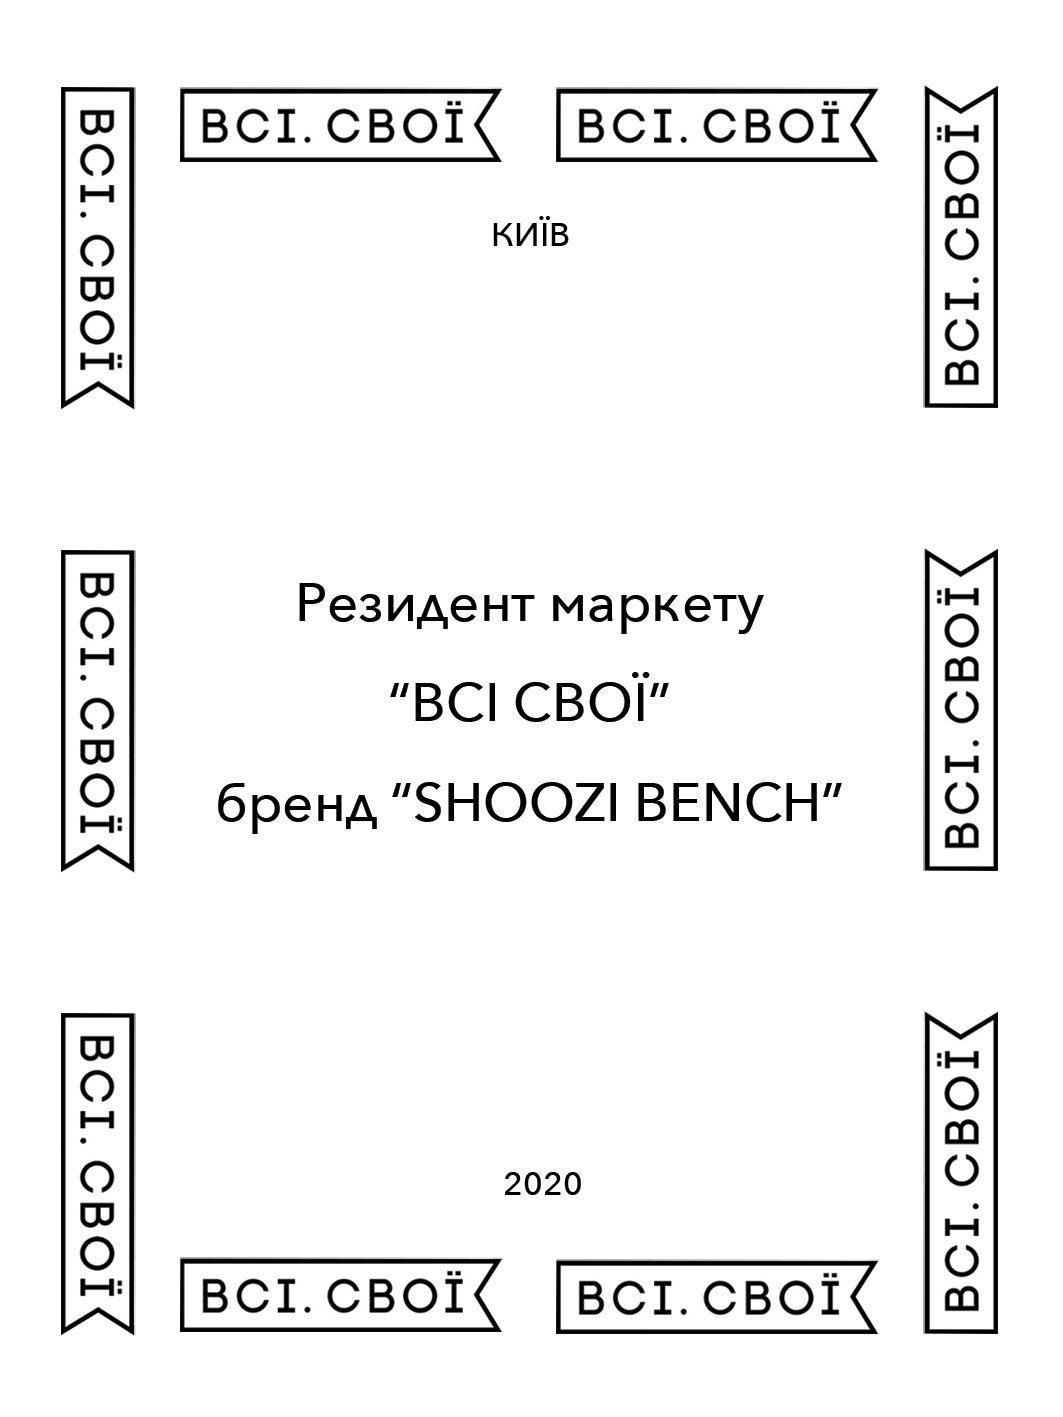 Сертификат участия в маркете "ВСІ СВОЇ"